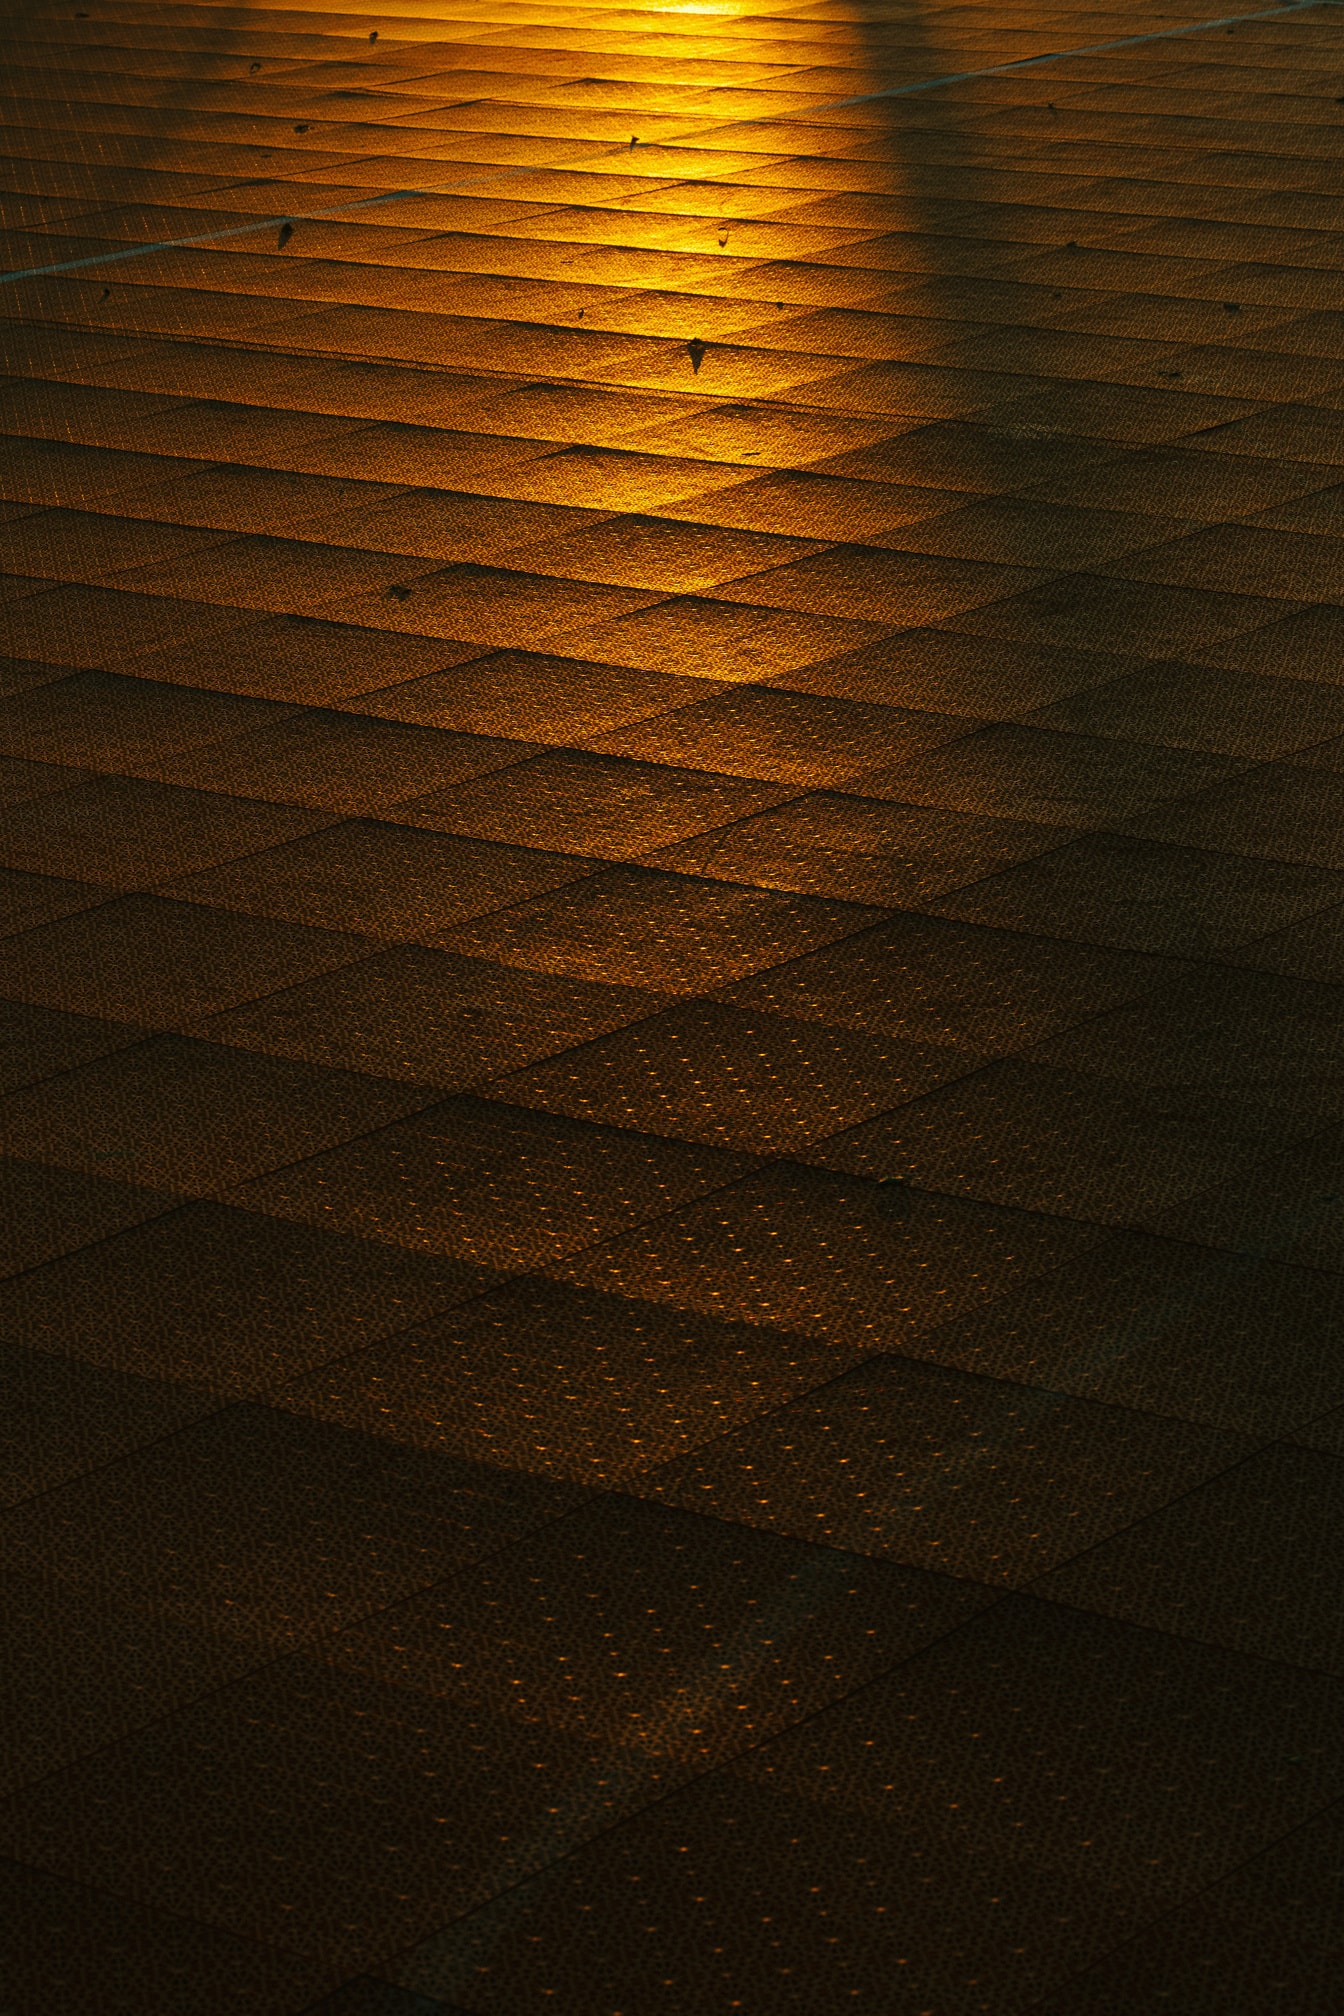 Ánh sáng mặt trời màu vàng cam phản chiếu trên mặt đất với bề mặt nhựa vào lúc hoàng hôn